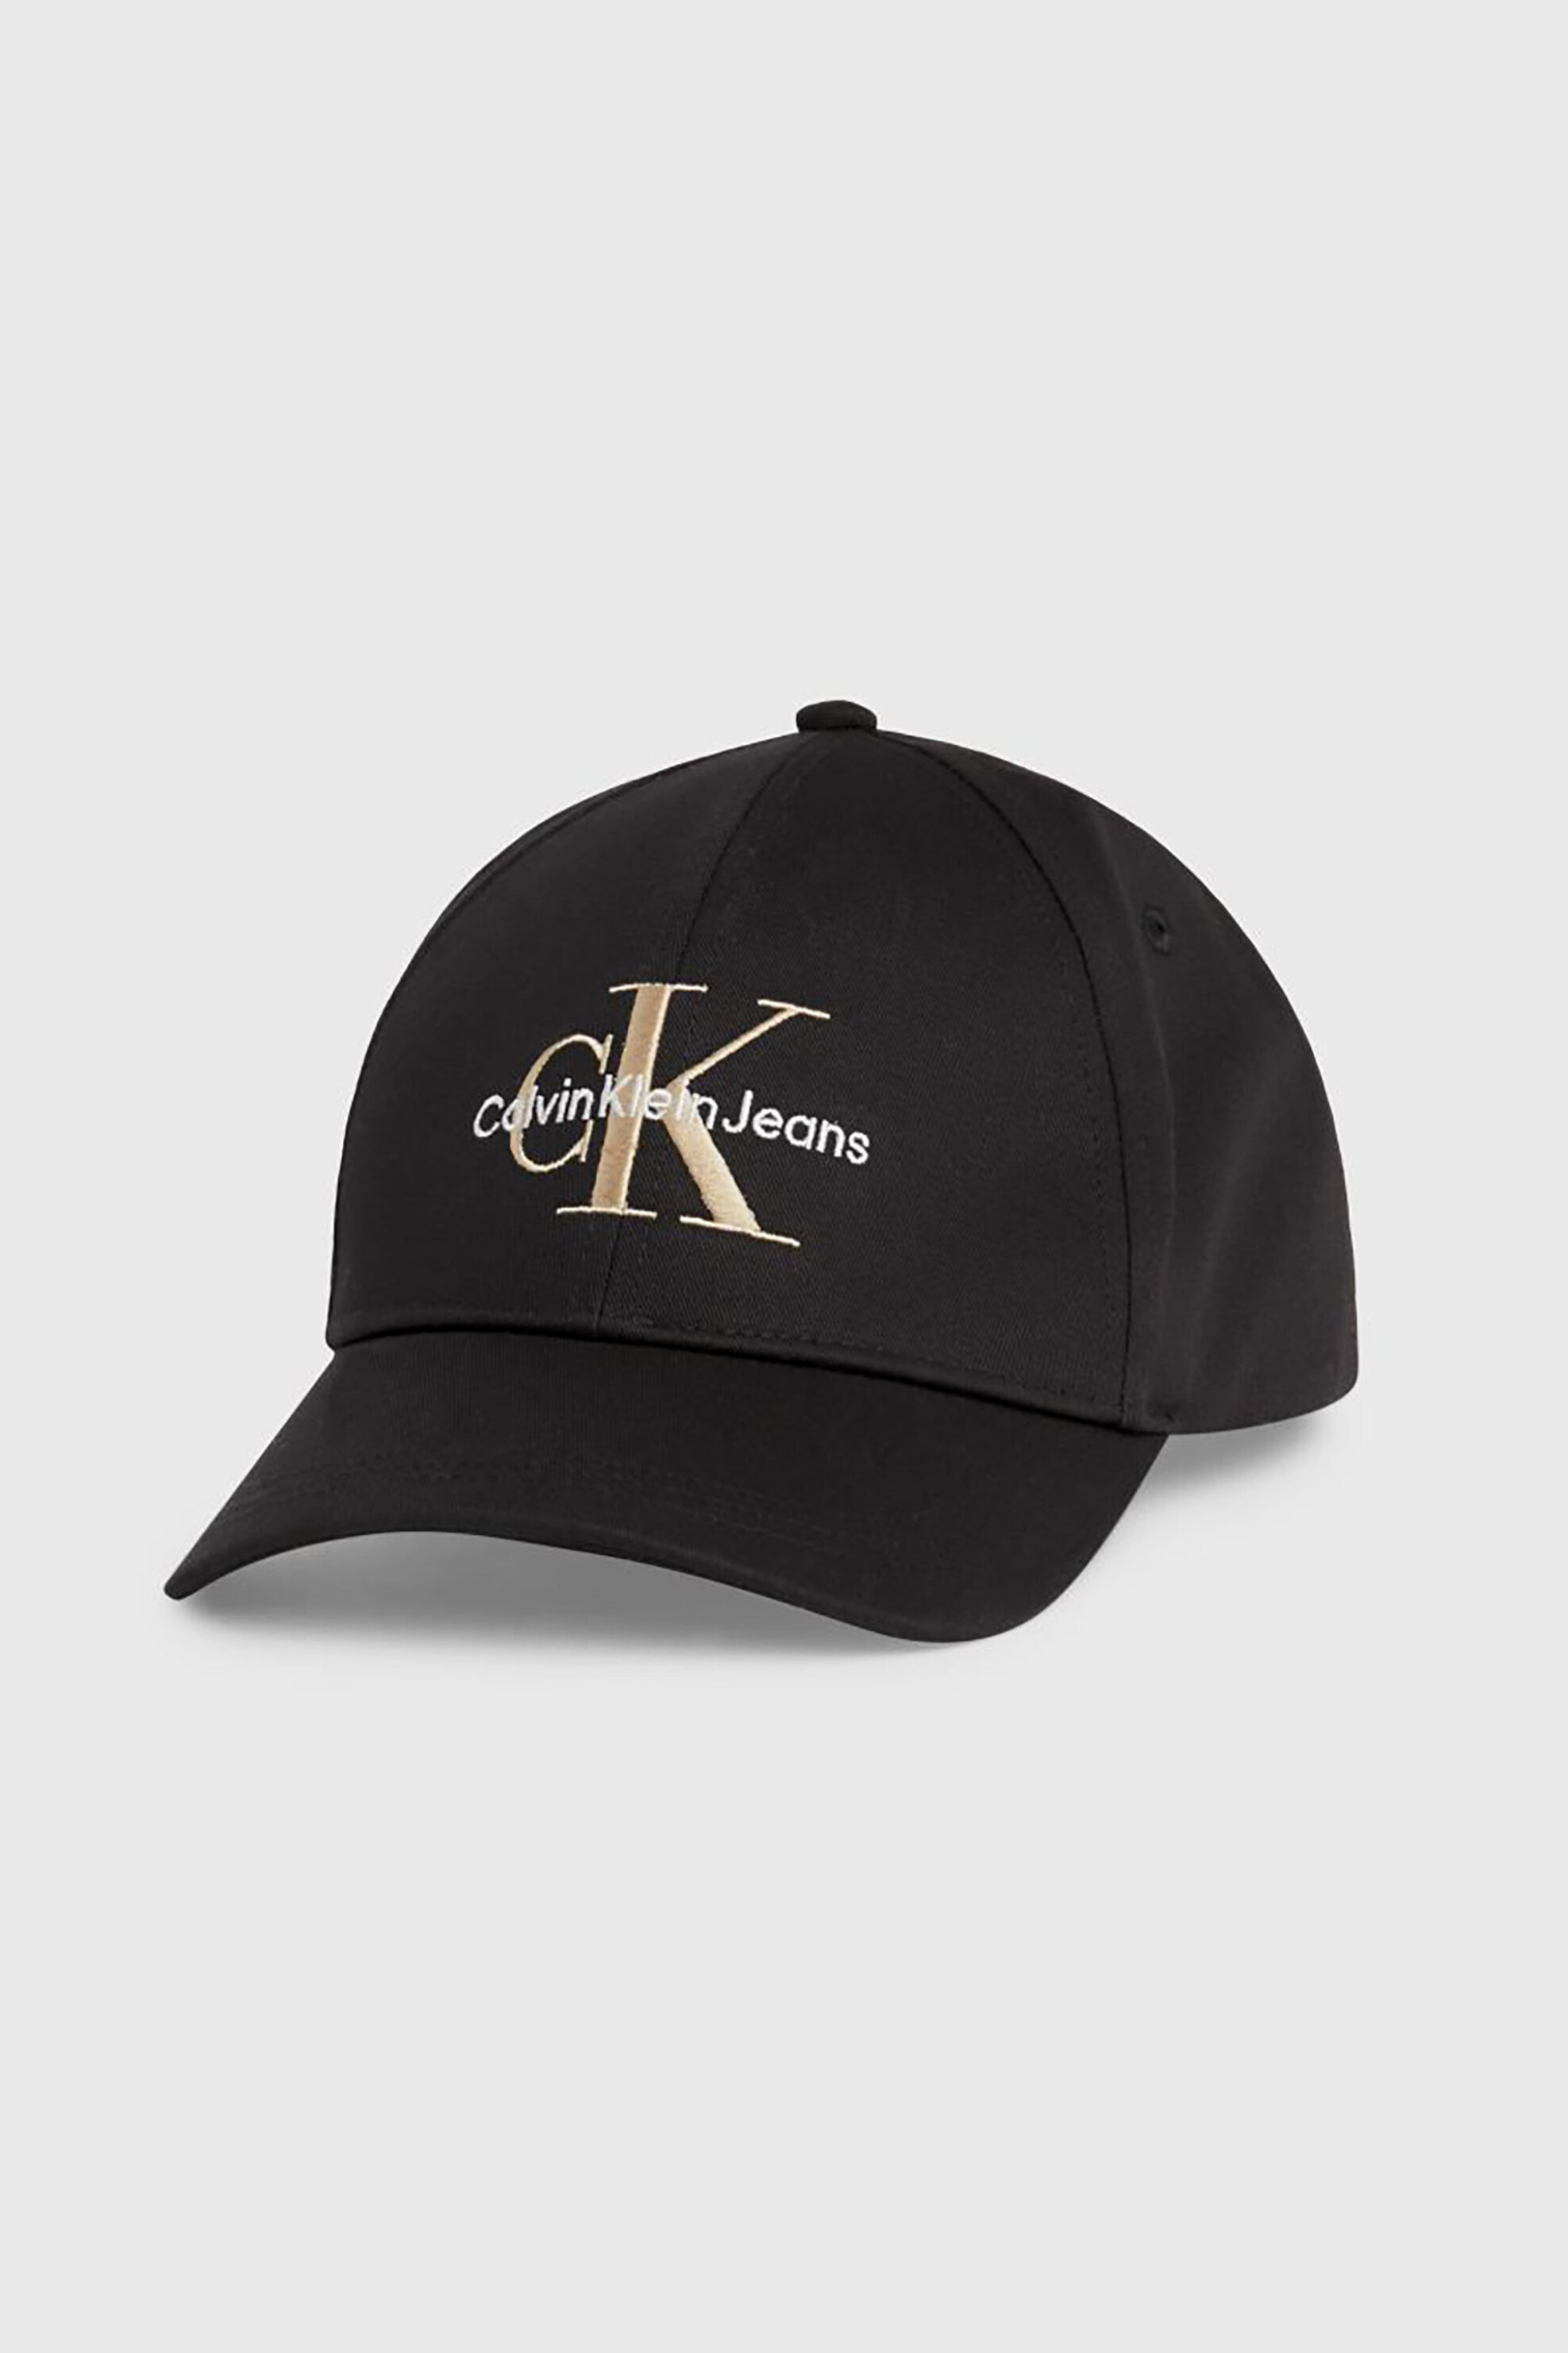 Ανδρική Μόδα > Ανδρικά Αξεσουάρ > Ανδρικά Καπέλα & Σκούφοι CK Jeans ανδρικό καπέλο μονόχρωμο με contrast κεντημένο λογότυπο - K50K510061 Μαύρο